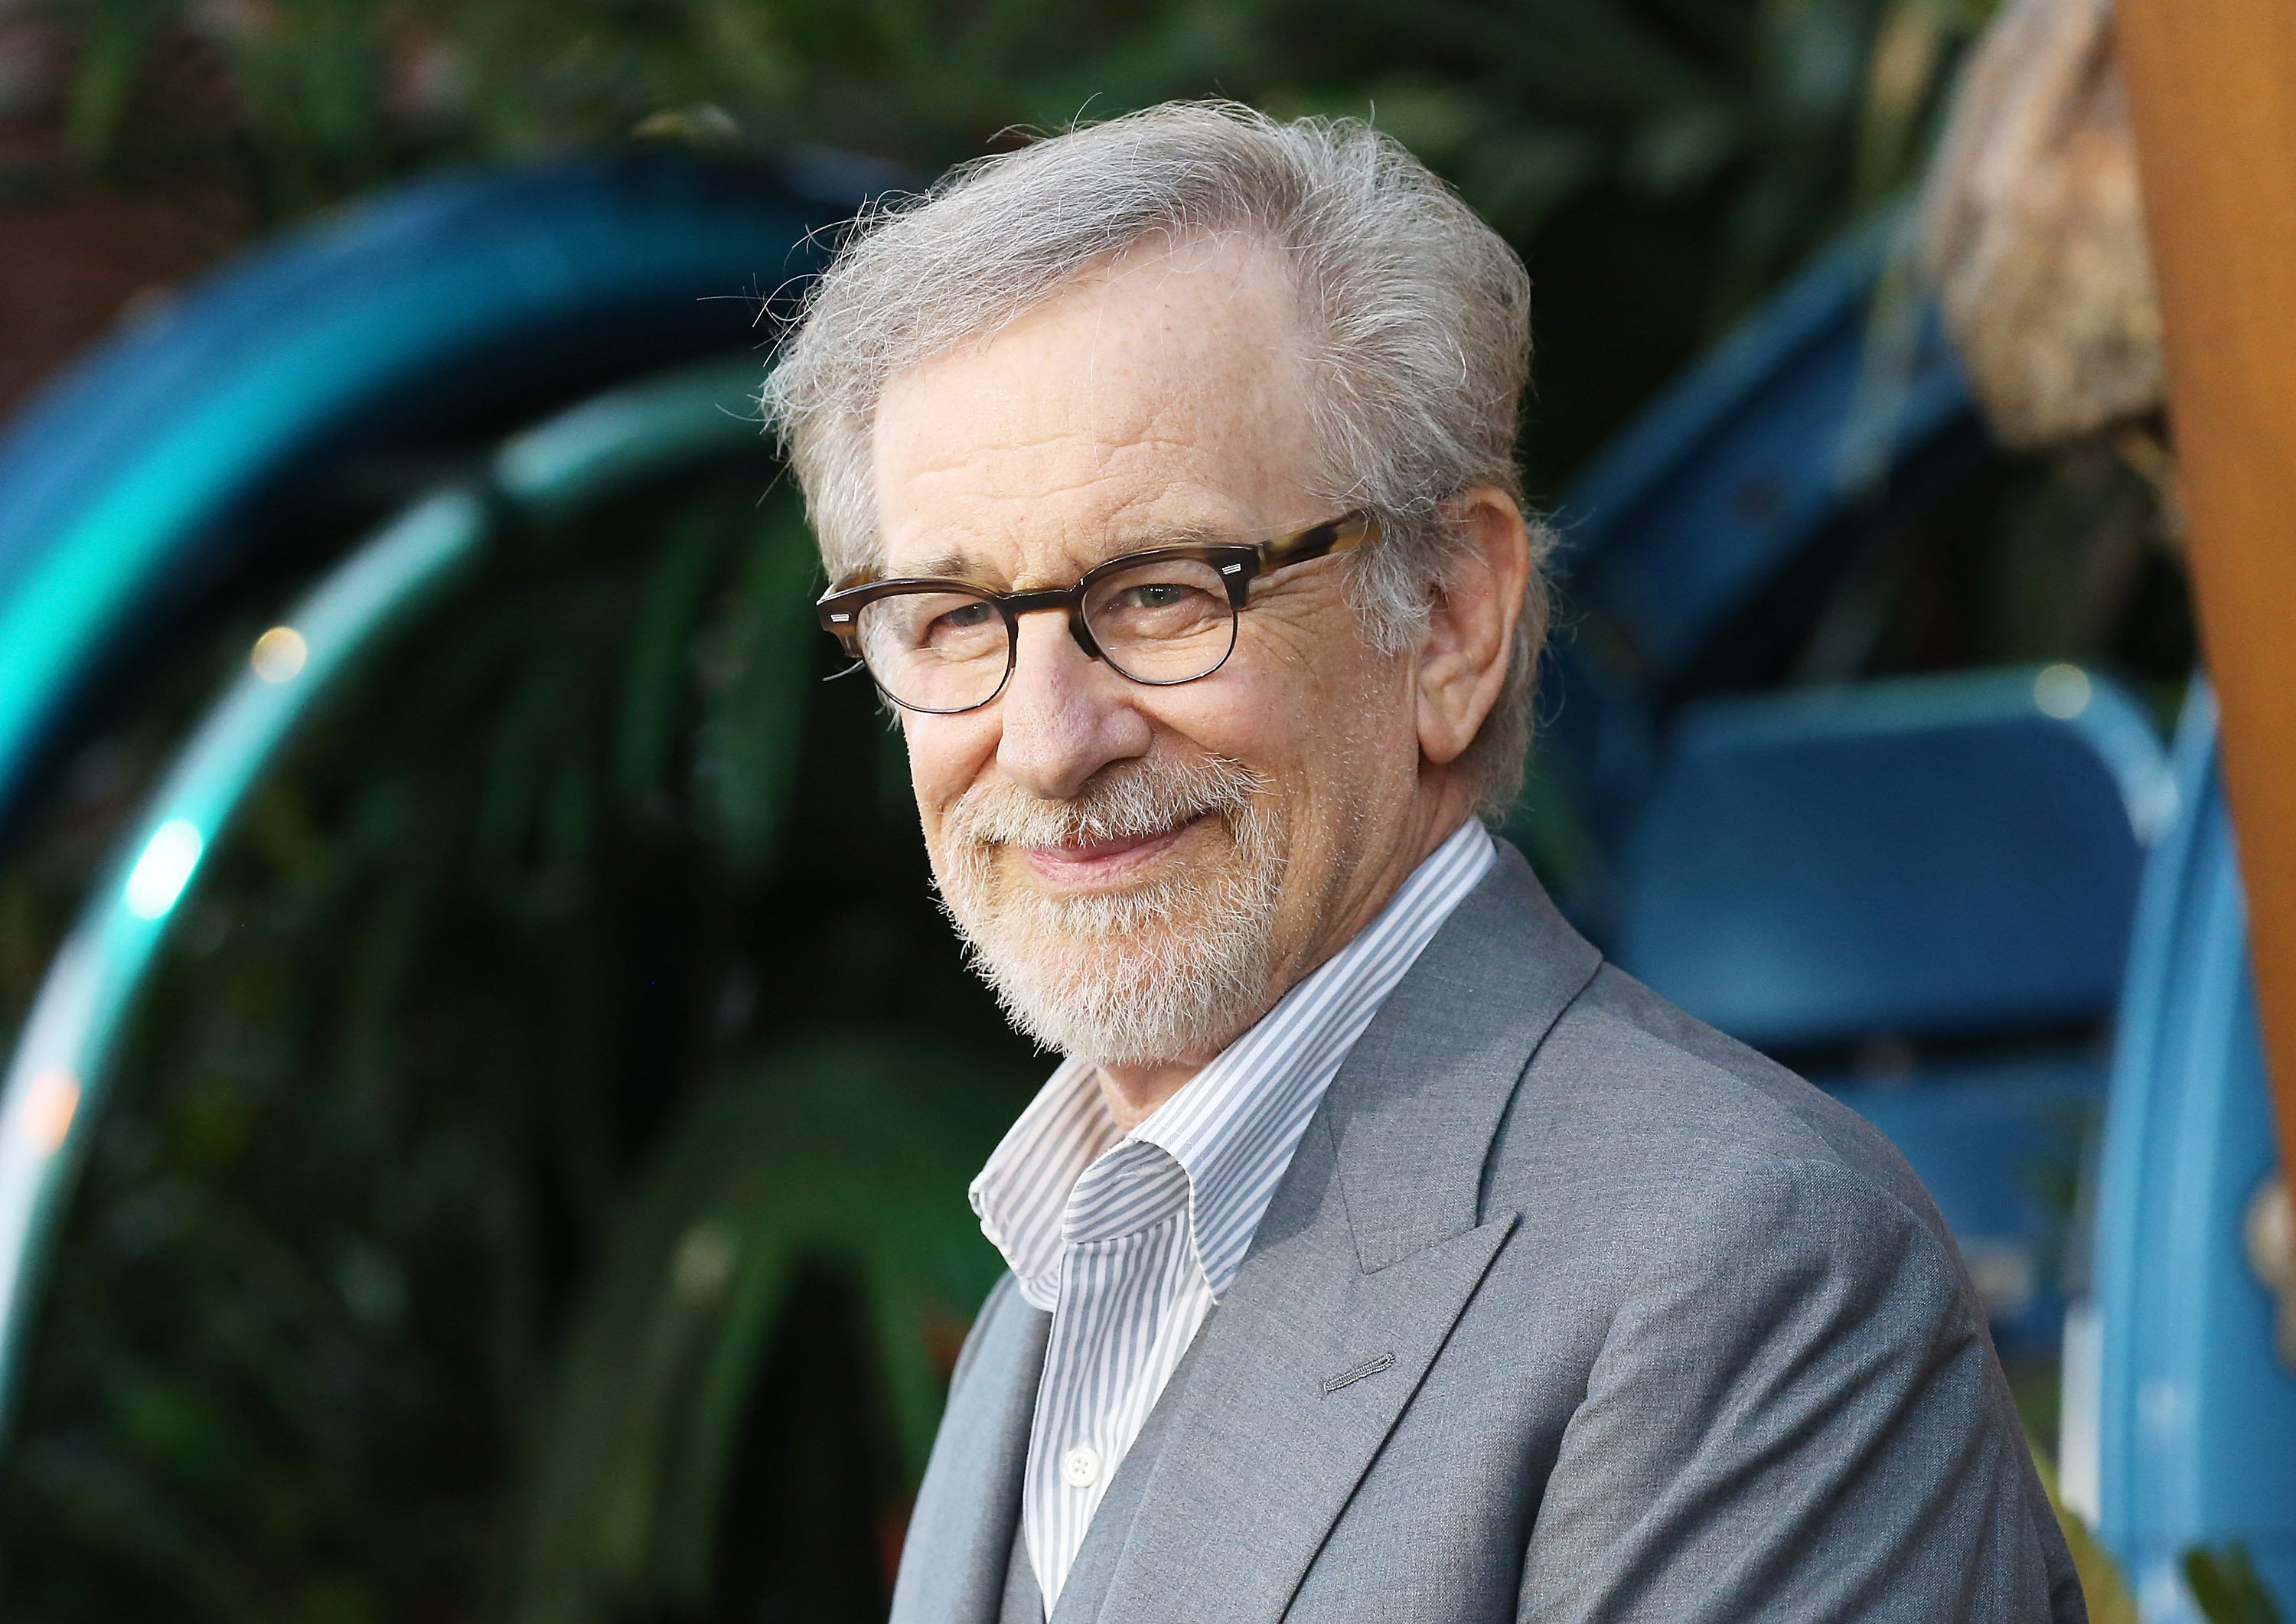 Steven Spielberg wearing a suit